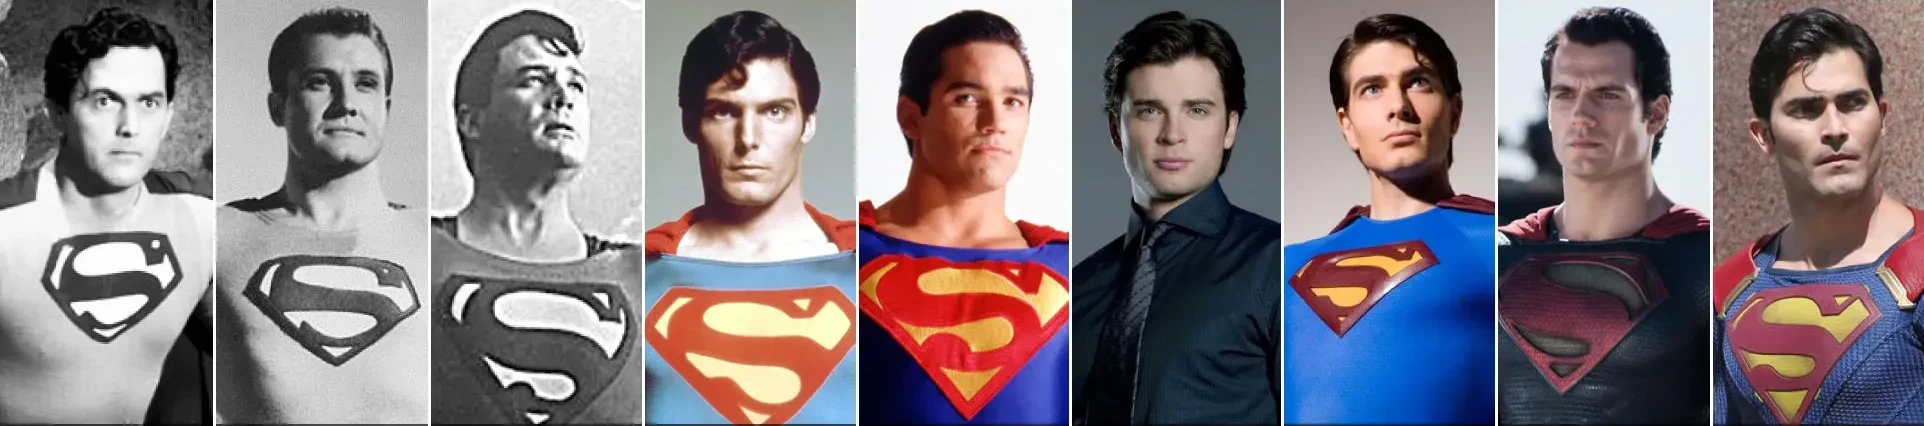 El legado de Superman supondrá el inicio de la nueva saga